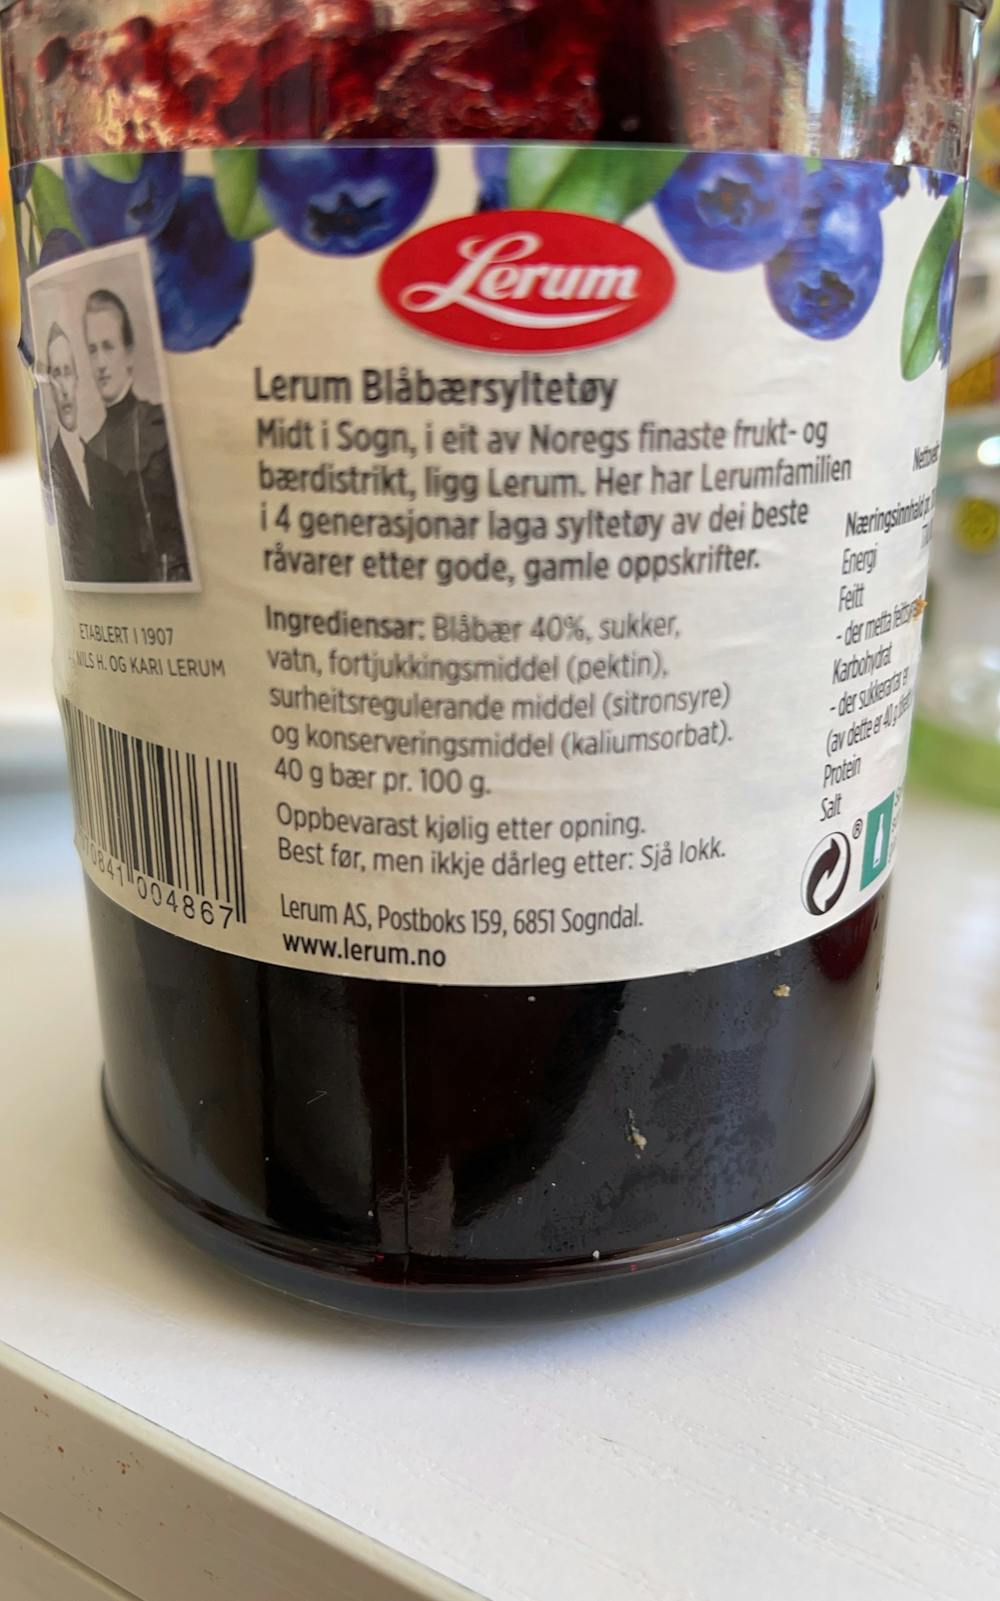 Ingredienslisten til Blåbærsyltetøy, Lerum